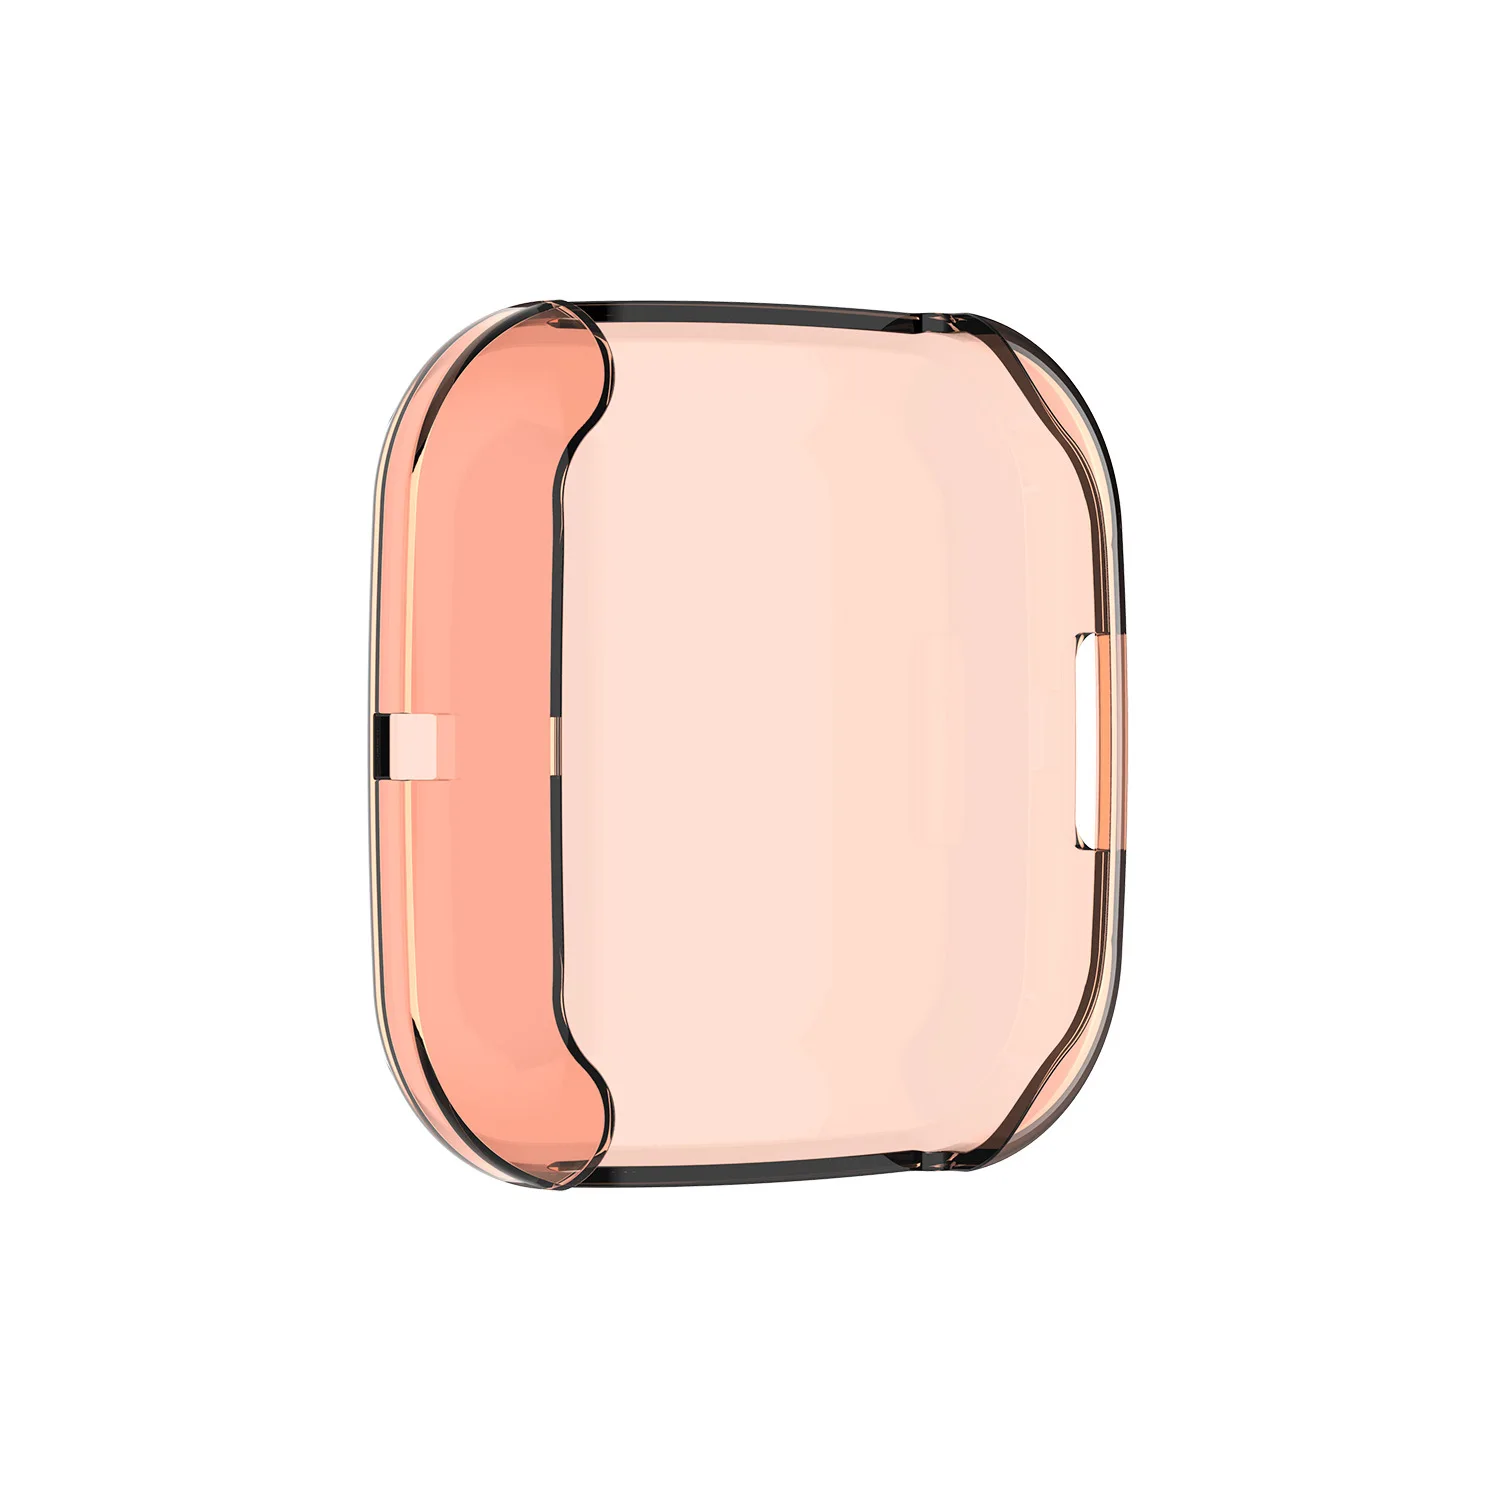 100 шт./лот прозрачный силикон чехол для Fitbit Versa 2 Смарт часы защитный чехол Сменные аксессуары ремешок для часов 6 цветов